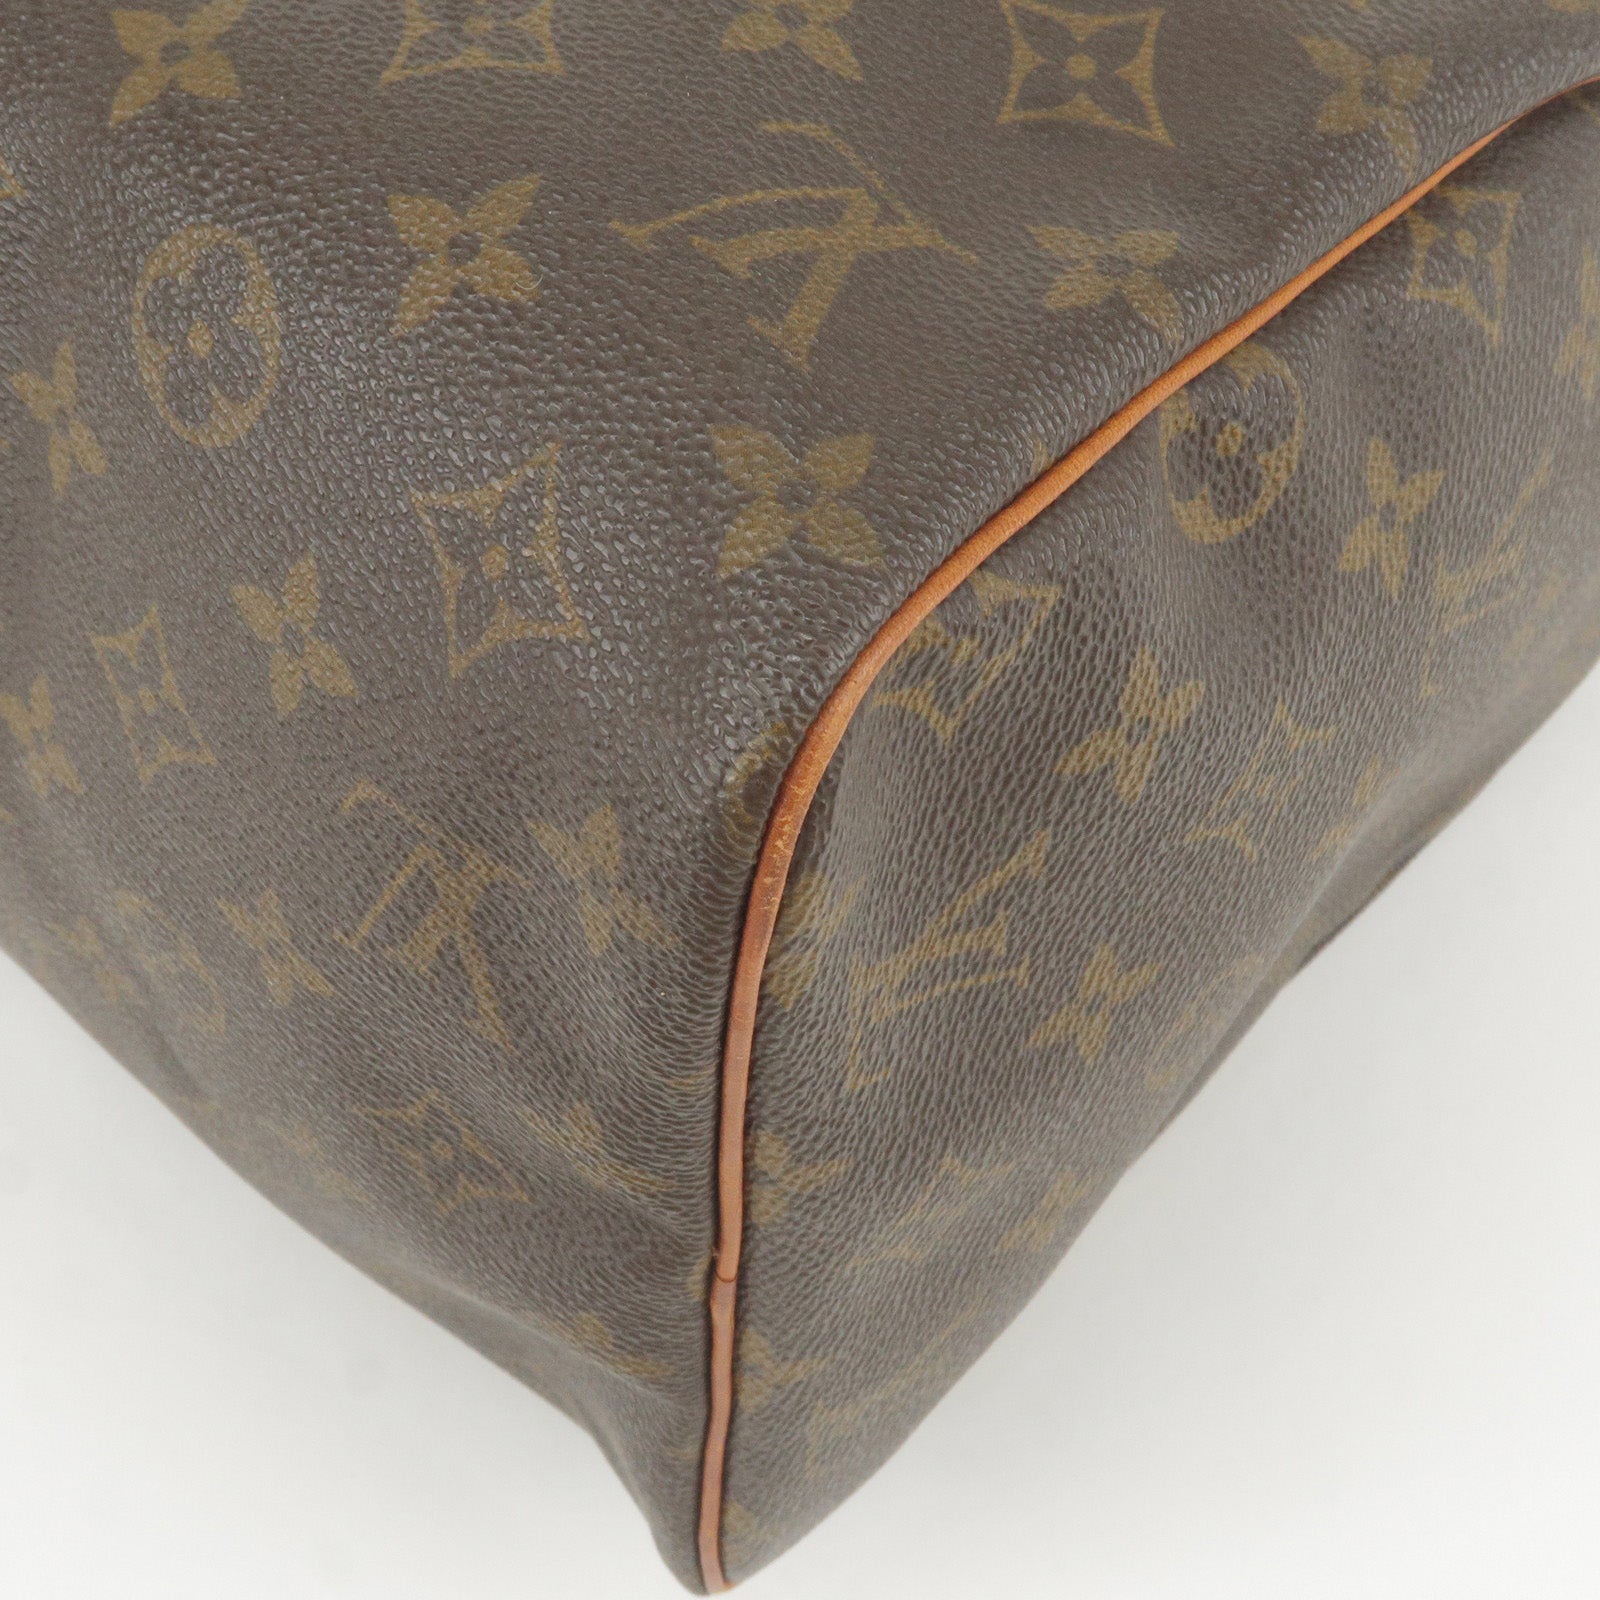 LOUIS VUITTON, a monogram canvas and metallic 'Speedy 30' handbag